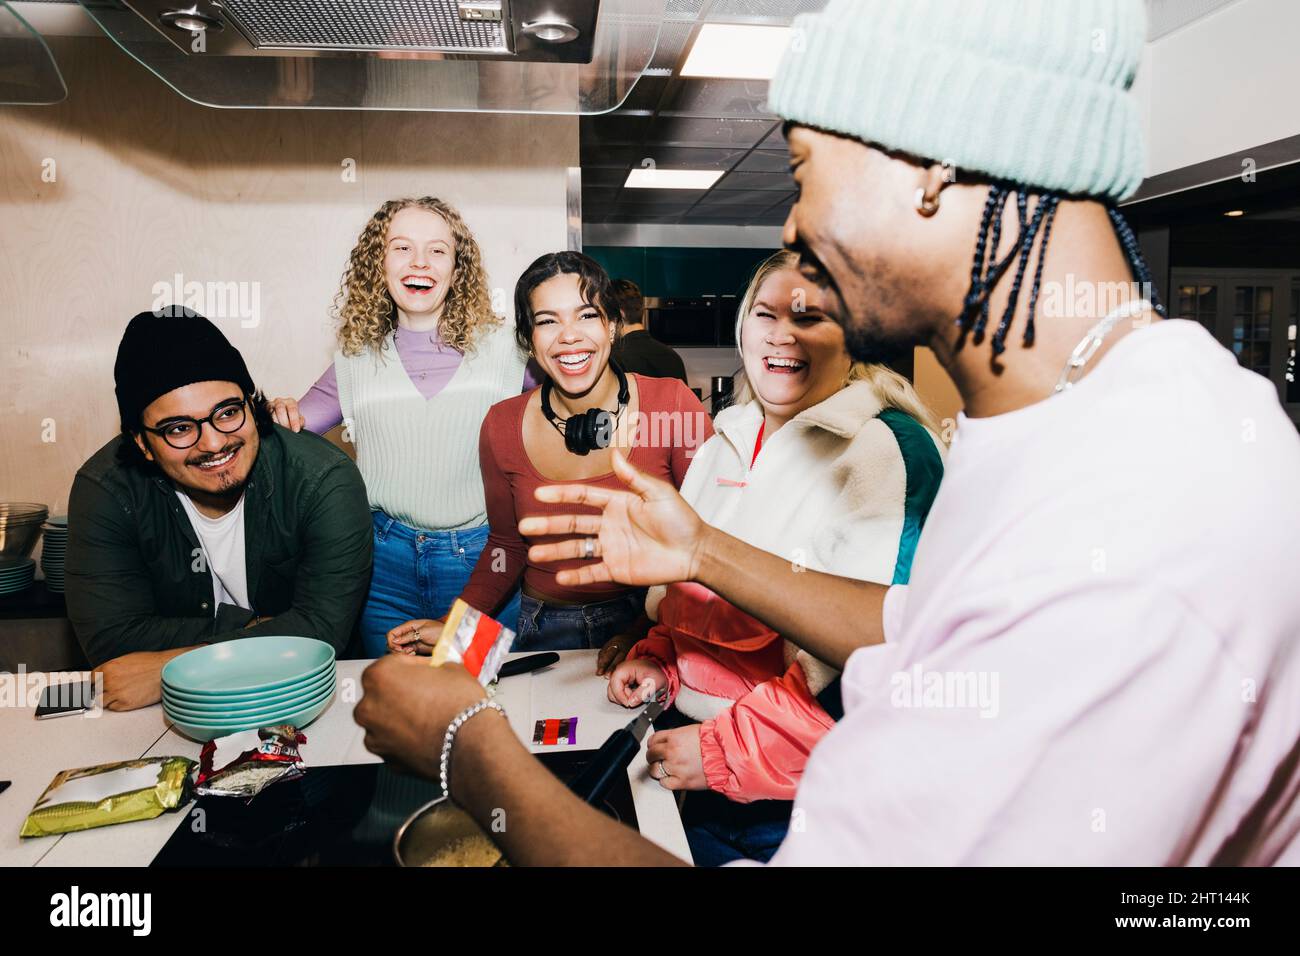 Glücklicher multirassischer junger Mann und Frauen, die einen männlichen Freund bei der Zubereitung von Essen im Studentenwohnheim anguckt Stockfoto